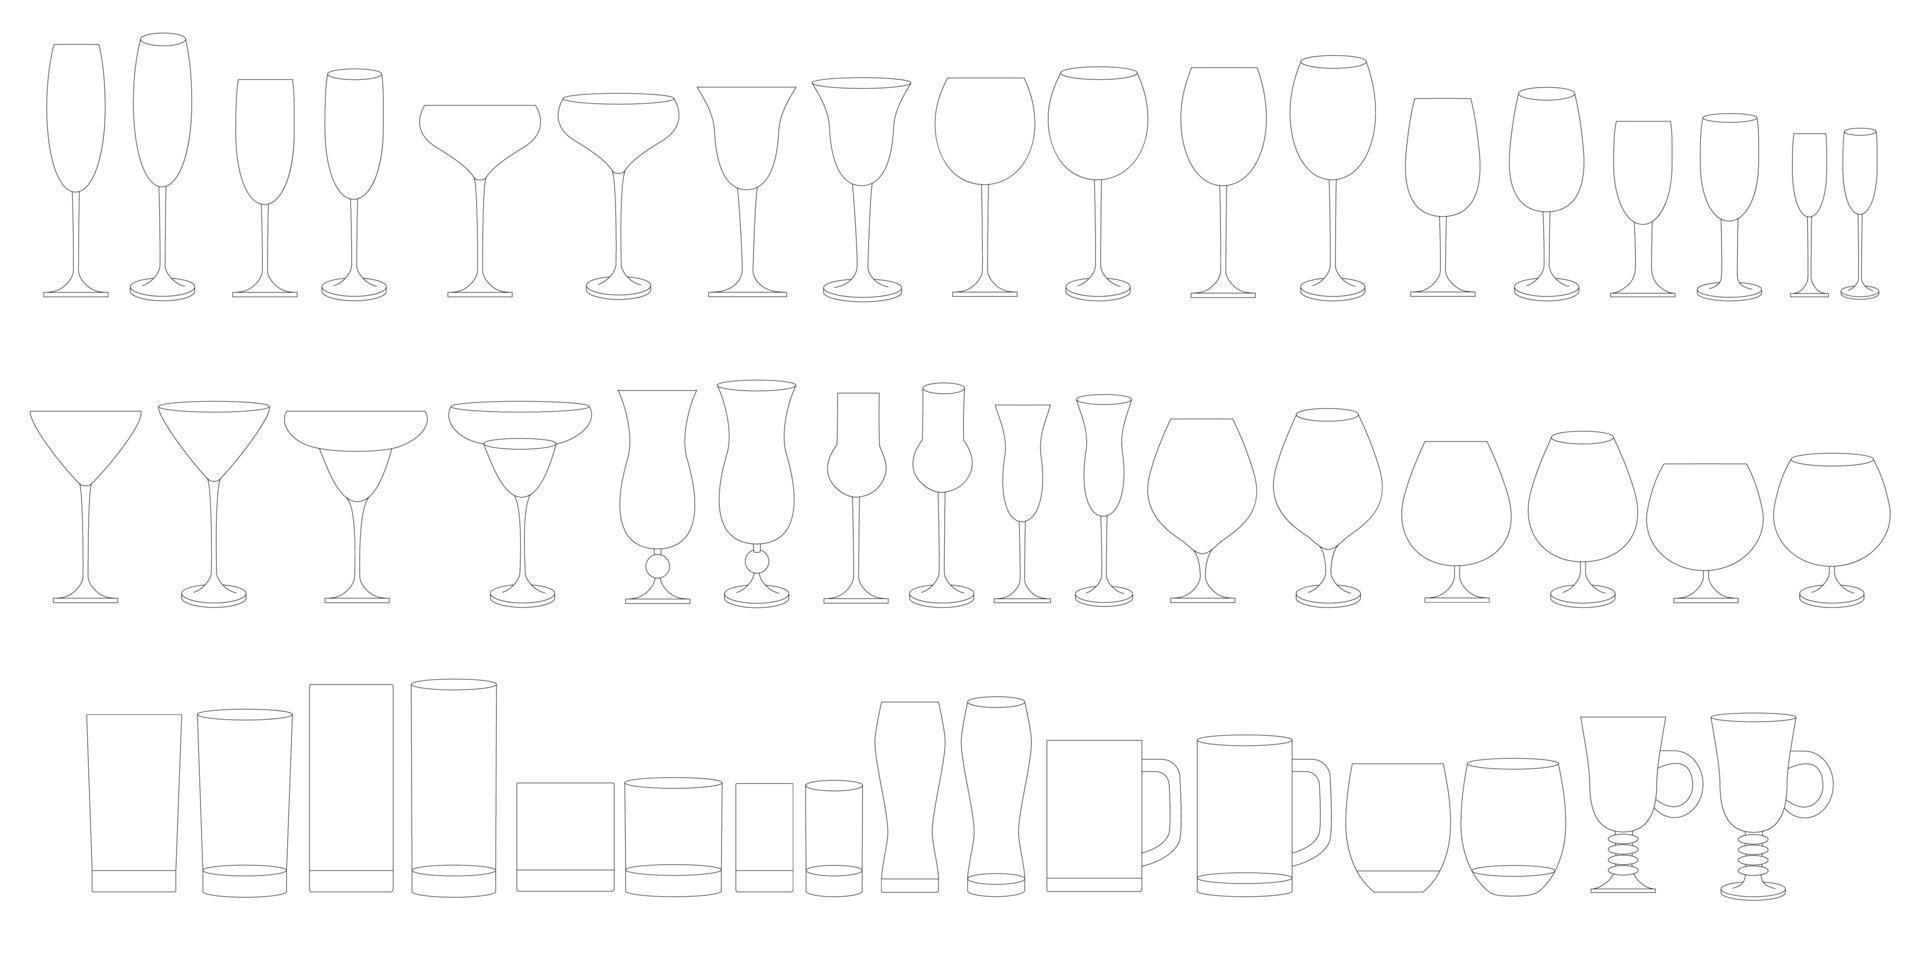 gläser für wein, champagner, whisky, cognac. Arten von Gläsern für alkoholische und alkoholfreie Getränke. vektor